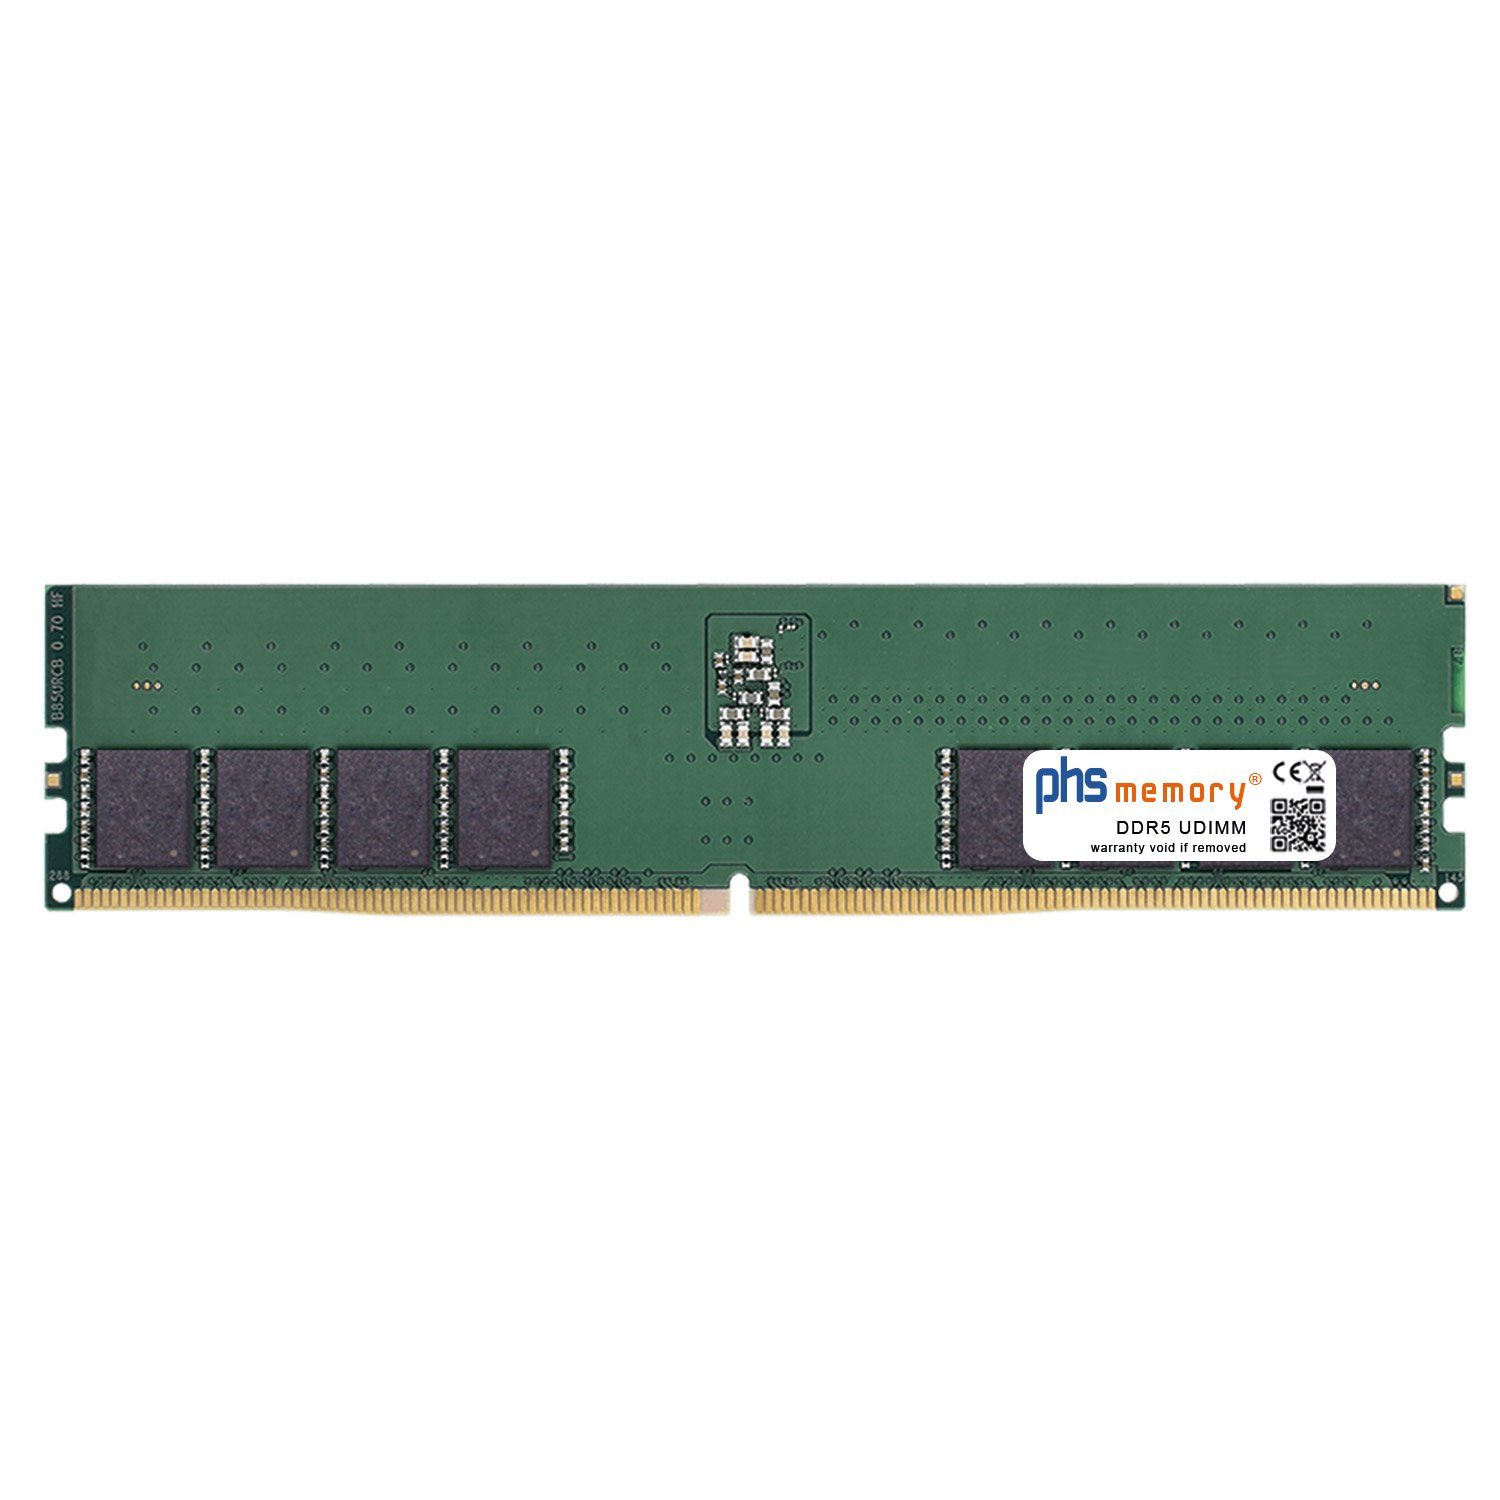 PHS-memory RAM für Captiva Highend Gaming R73-753 Arbeitsspeicher